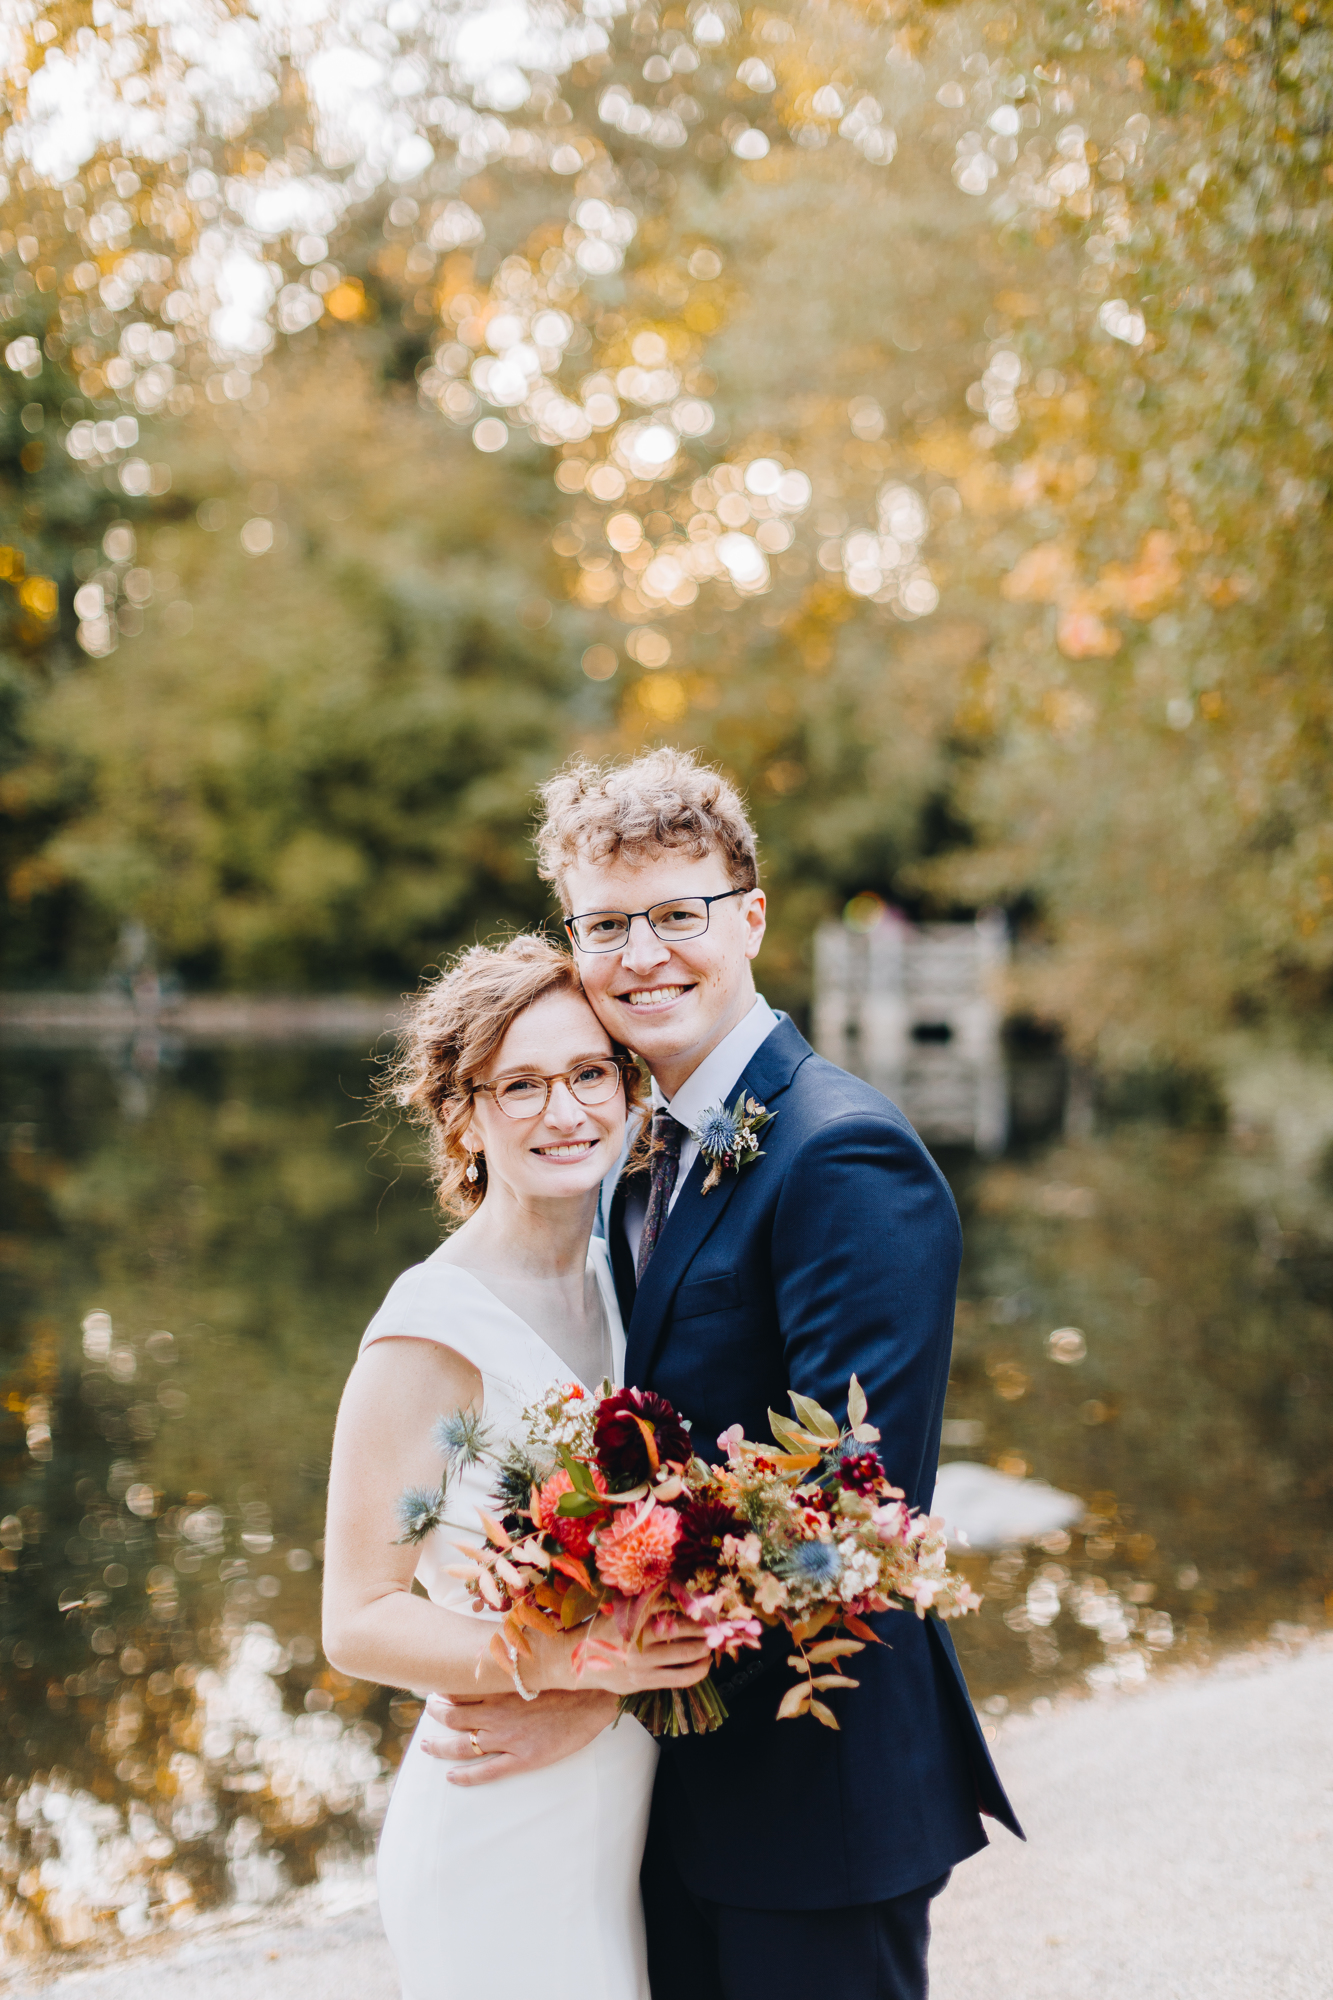 Prospect Park boathouse wedding photos with orange leaves